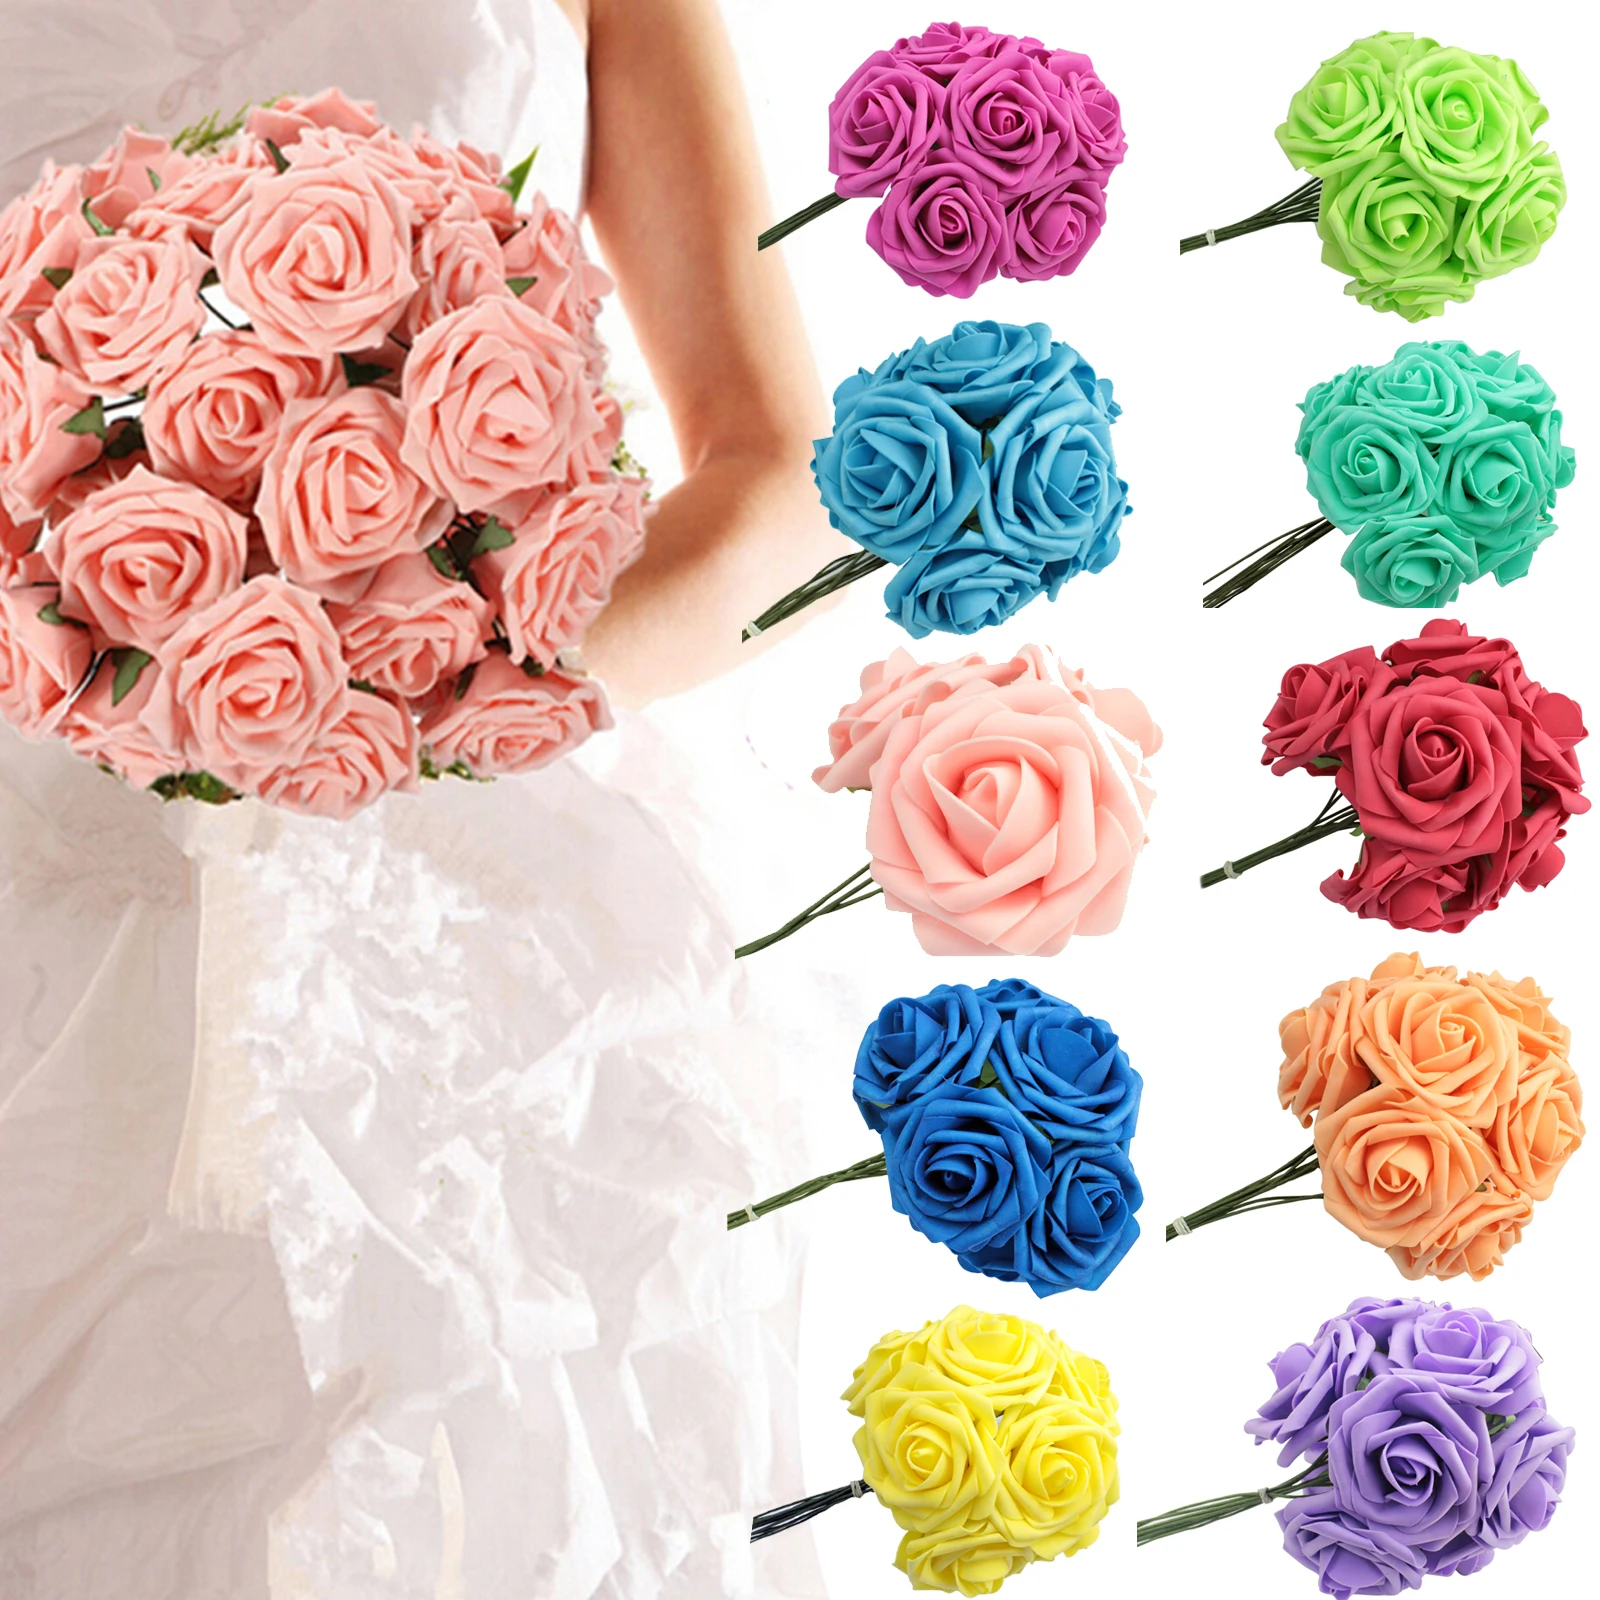 10 шт./лот 20 см искусственные цветы розы из пены Свадебные украшения горячие свадебные букет невесты украшения